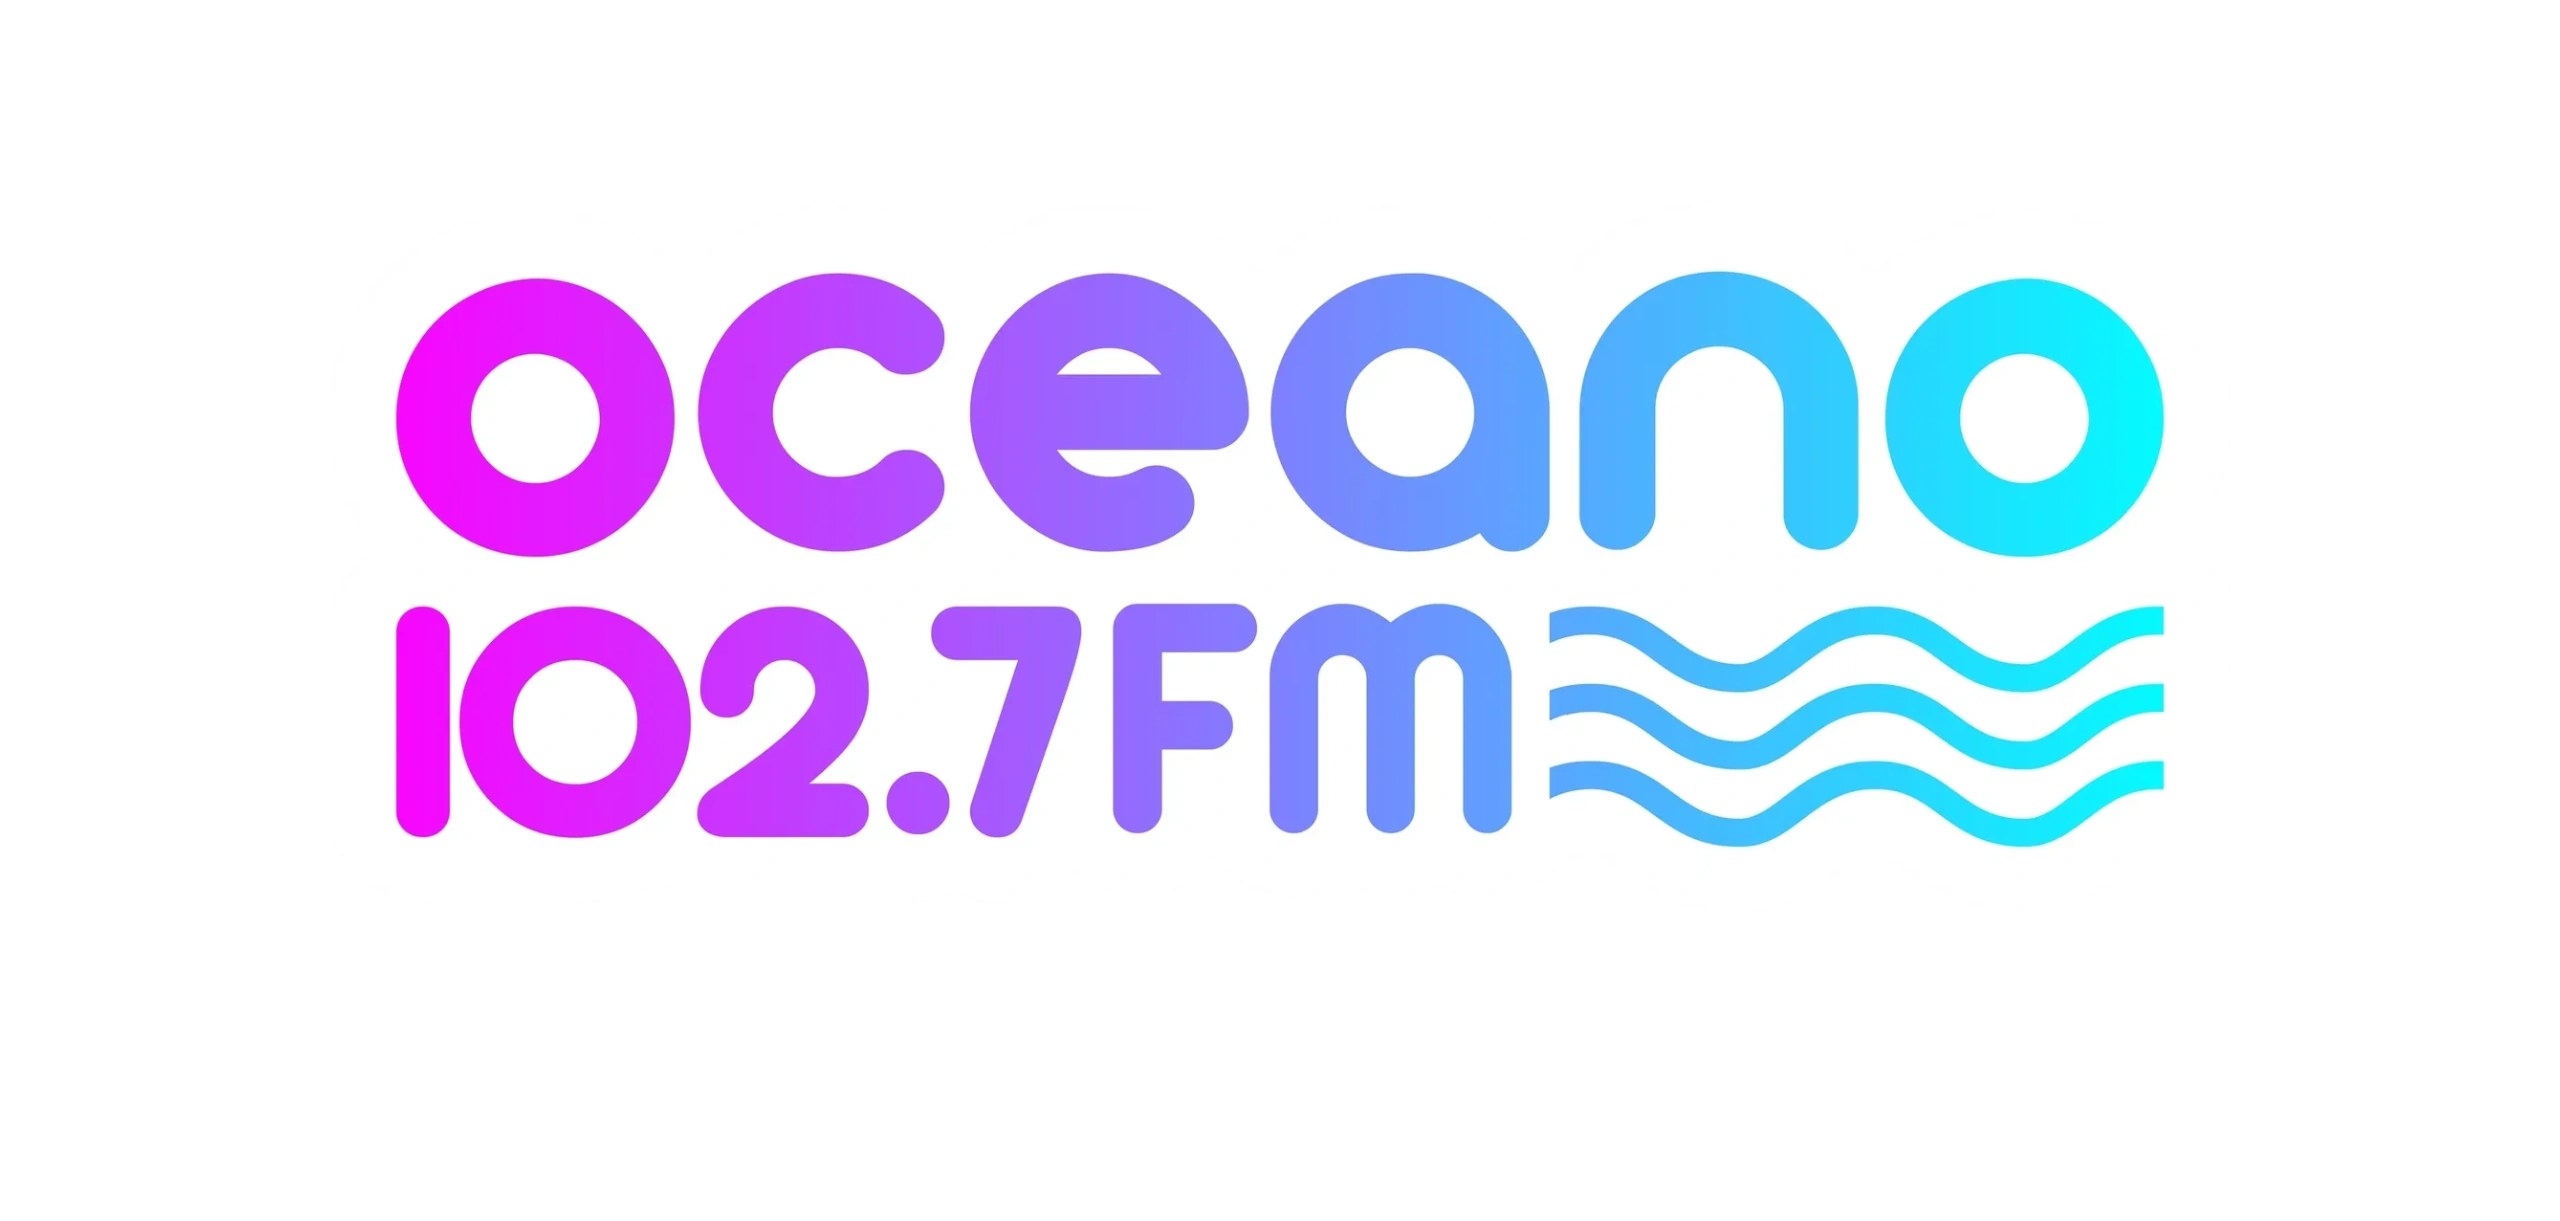 Oceano FM 102.7 - La Lucila del Mar - Partido de la Costa